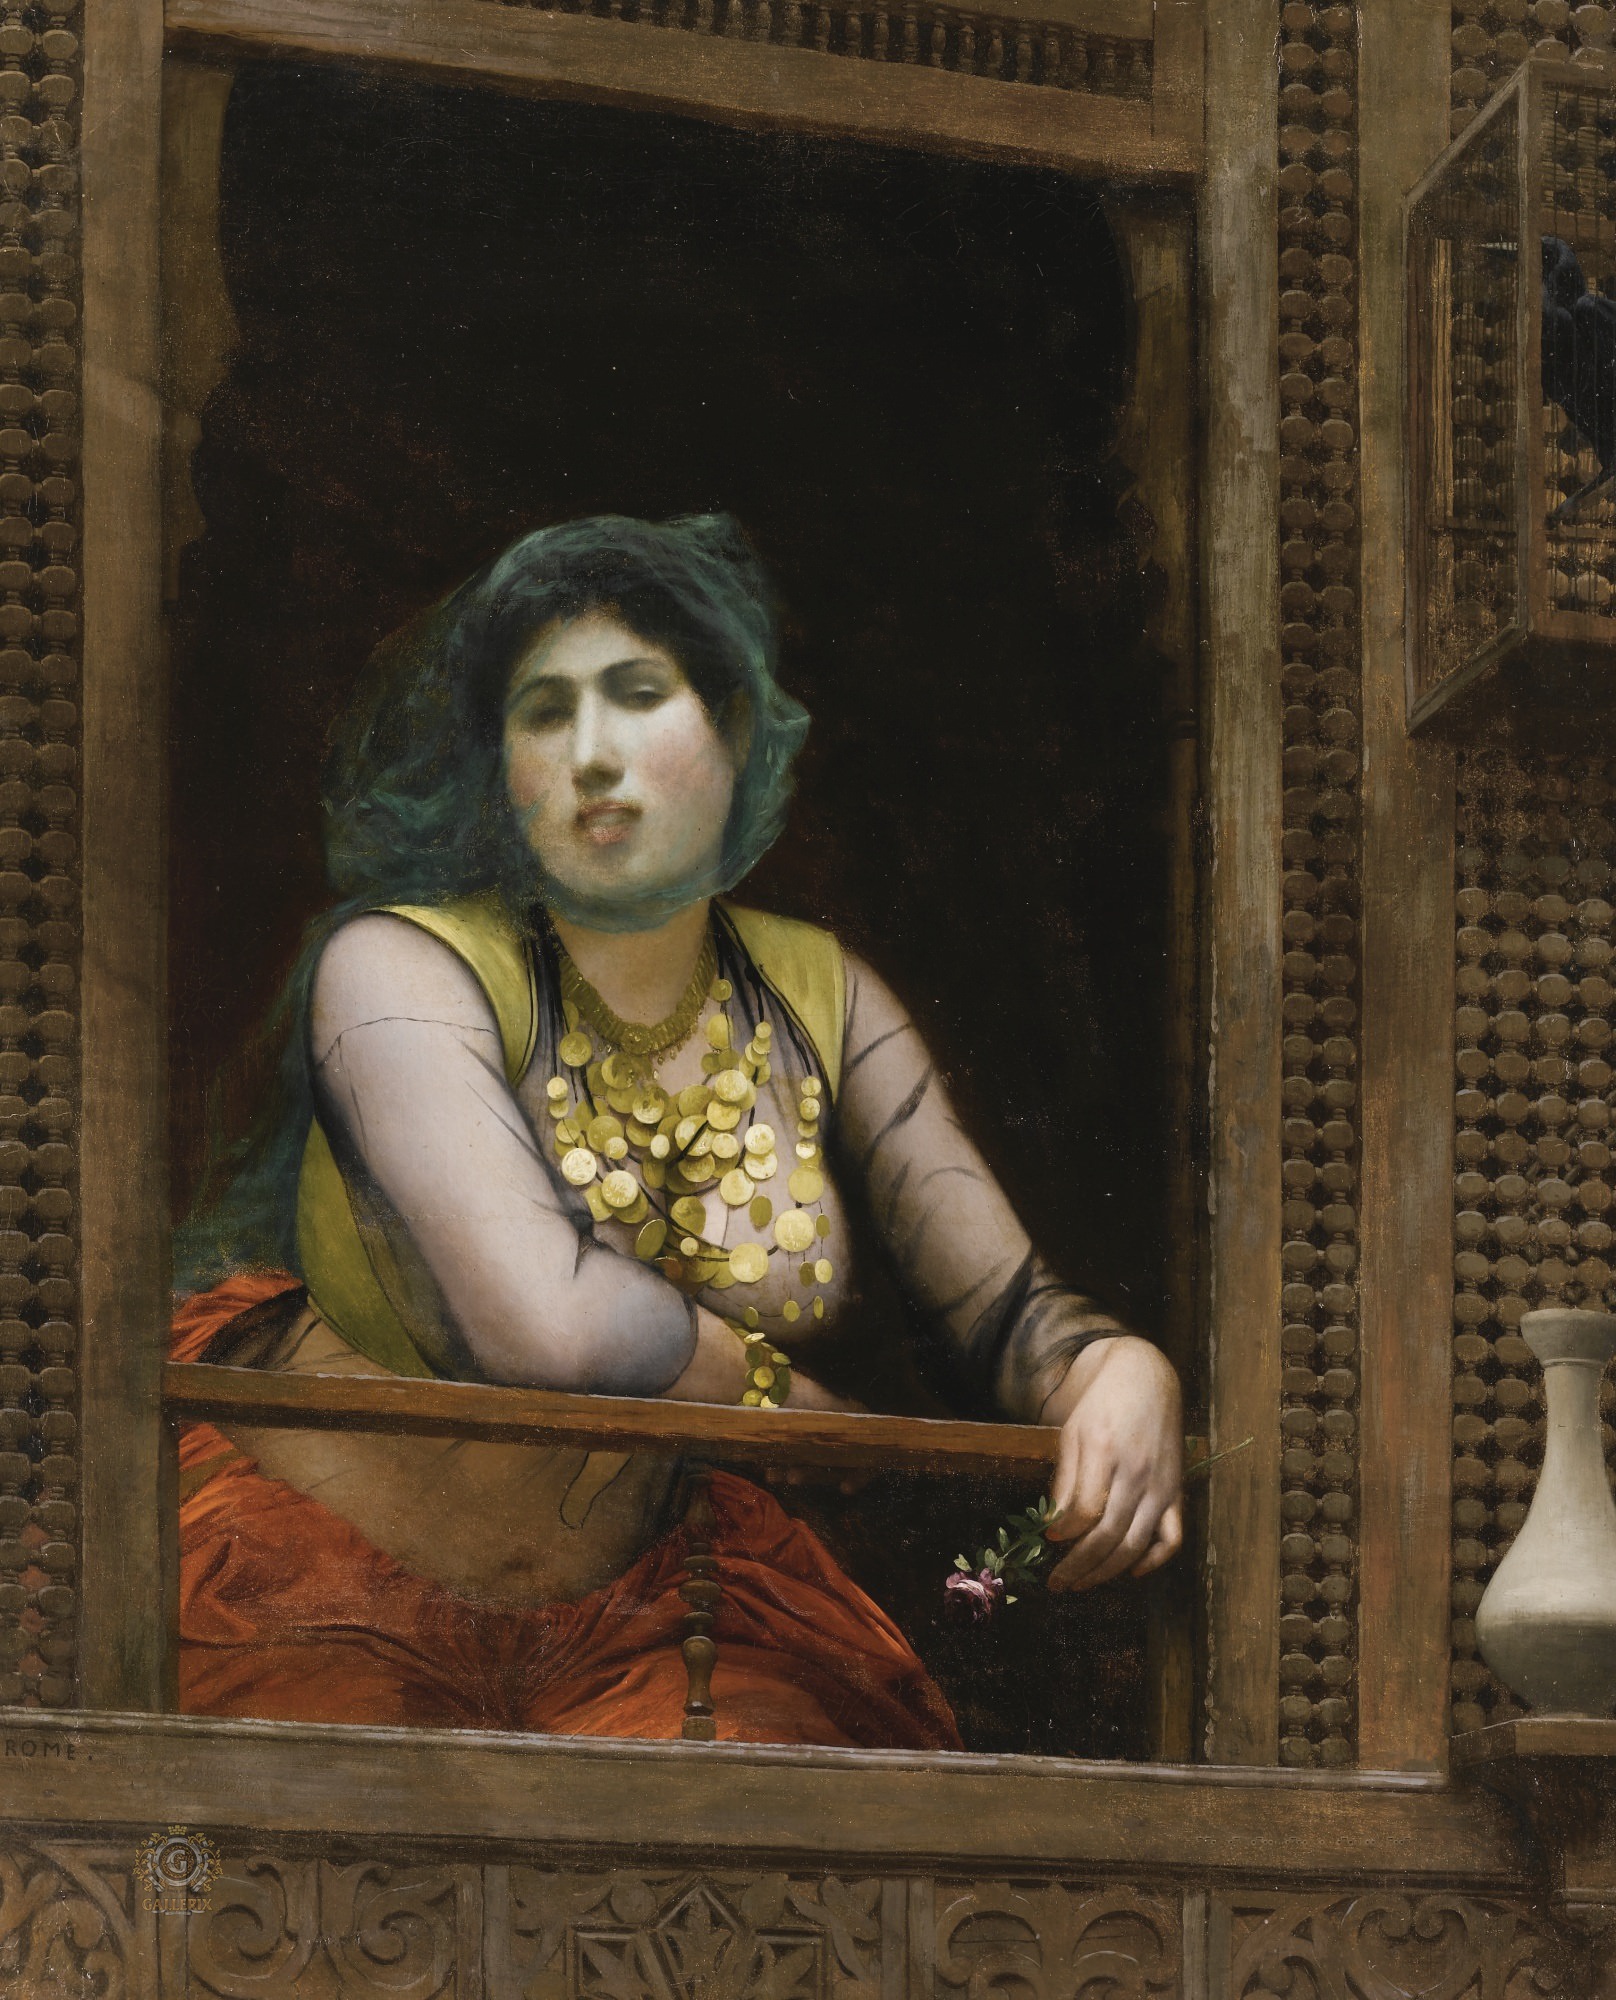 Жан-Леон Жером. "Женщина на балконе". Около 1888. Частная коллекция.